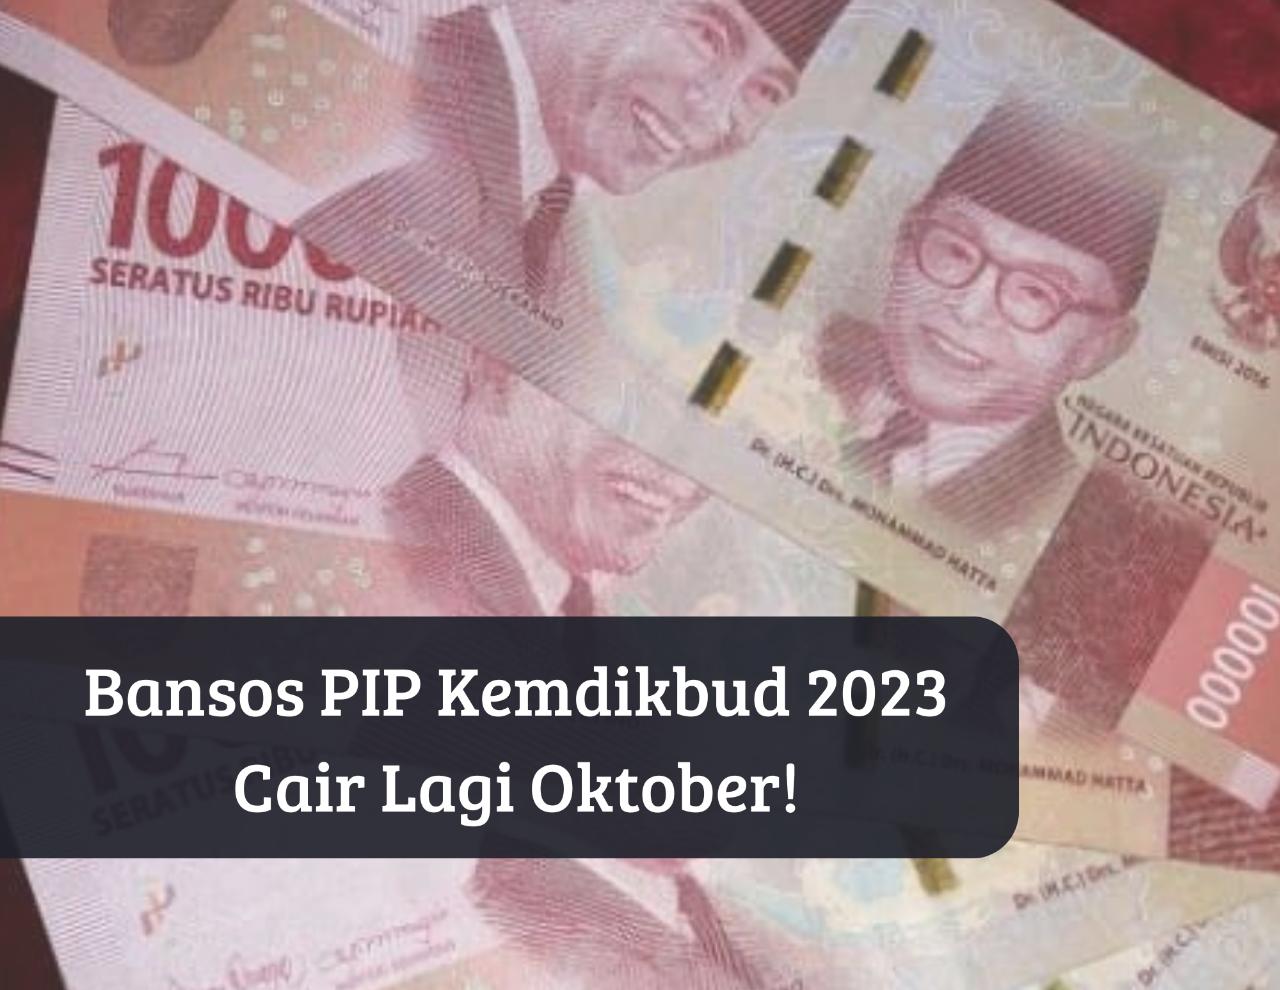 Cair Lagi! Cek Penerima Bansos PIP Kemdikbud 2023 Oktober, Siswa Sekolah Dapat Bantuan Gratis hingga Rp1 Juta